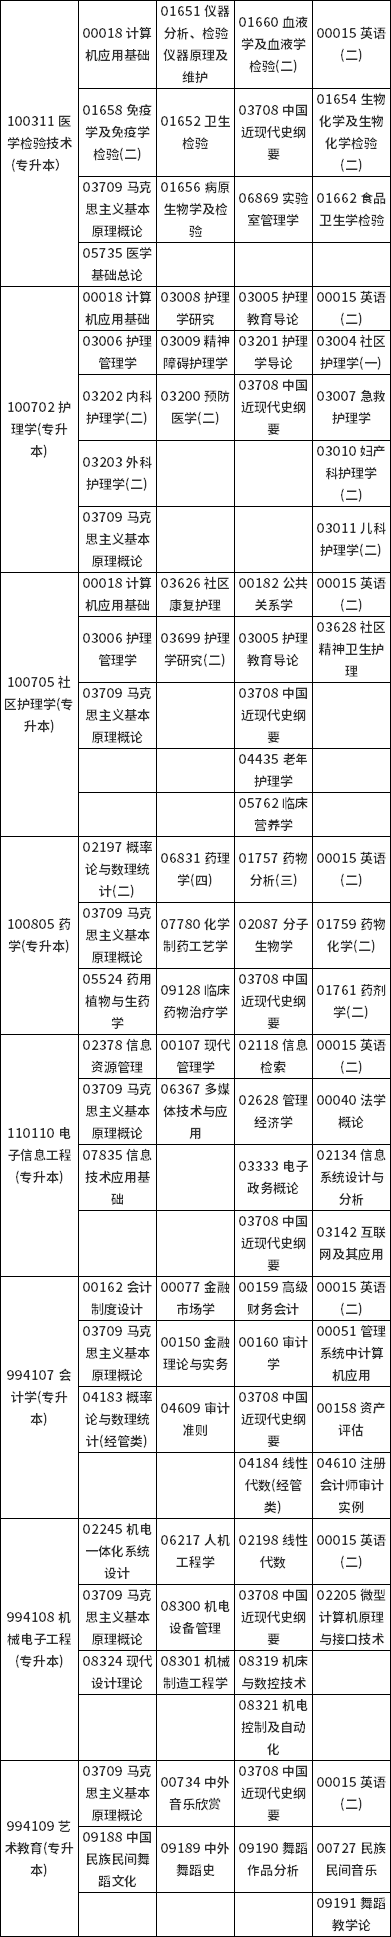 河南省高等教育自学考试2022年下半年报名考试日程安排